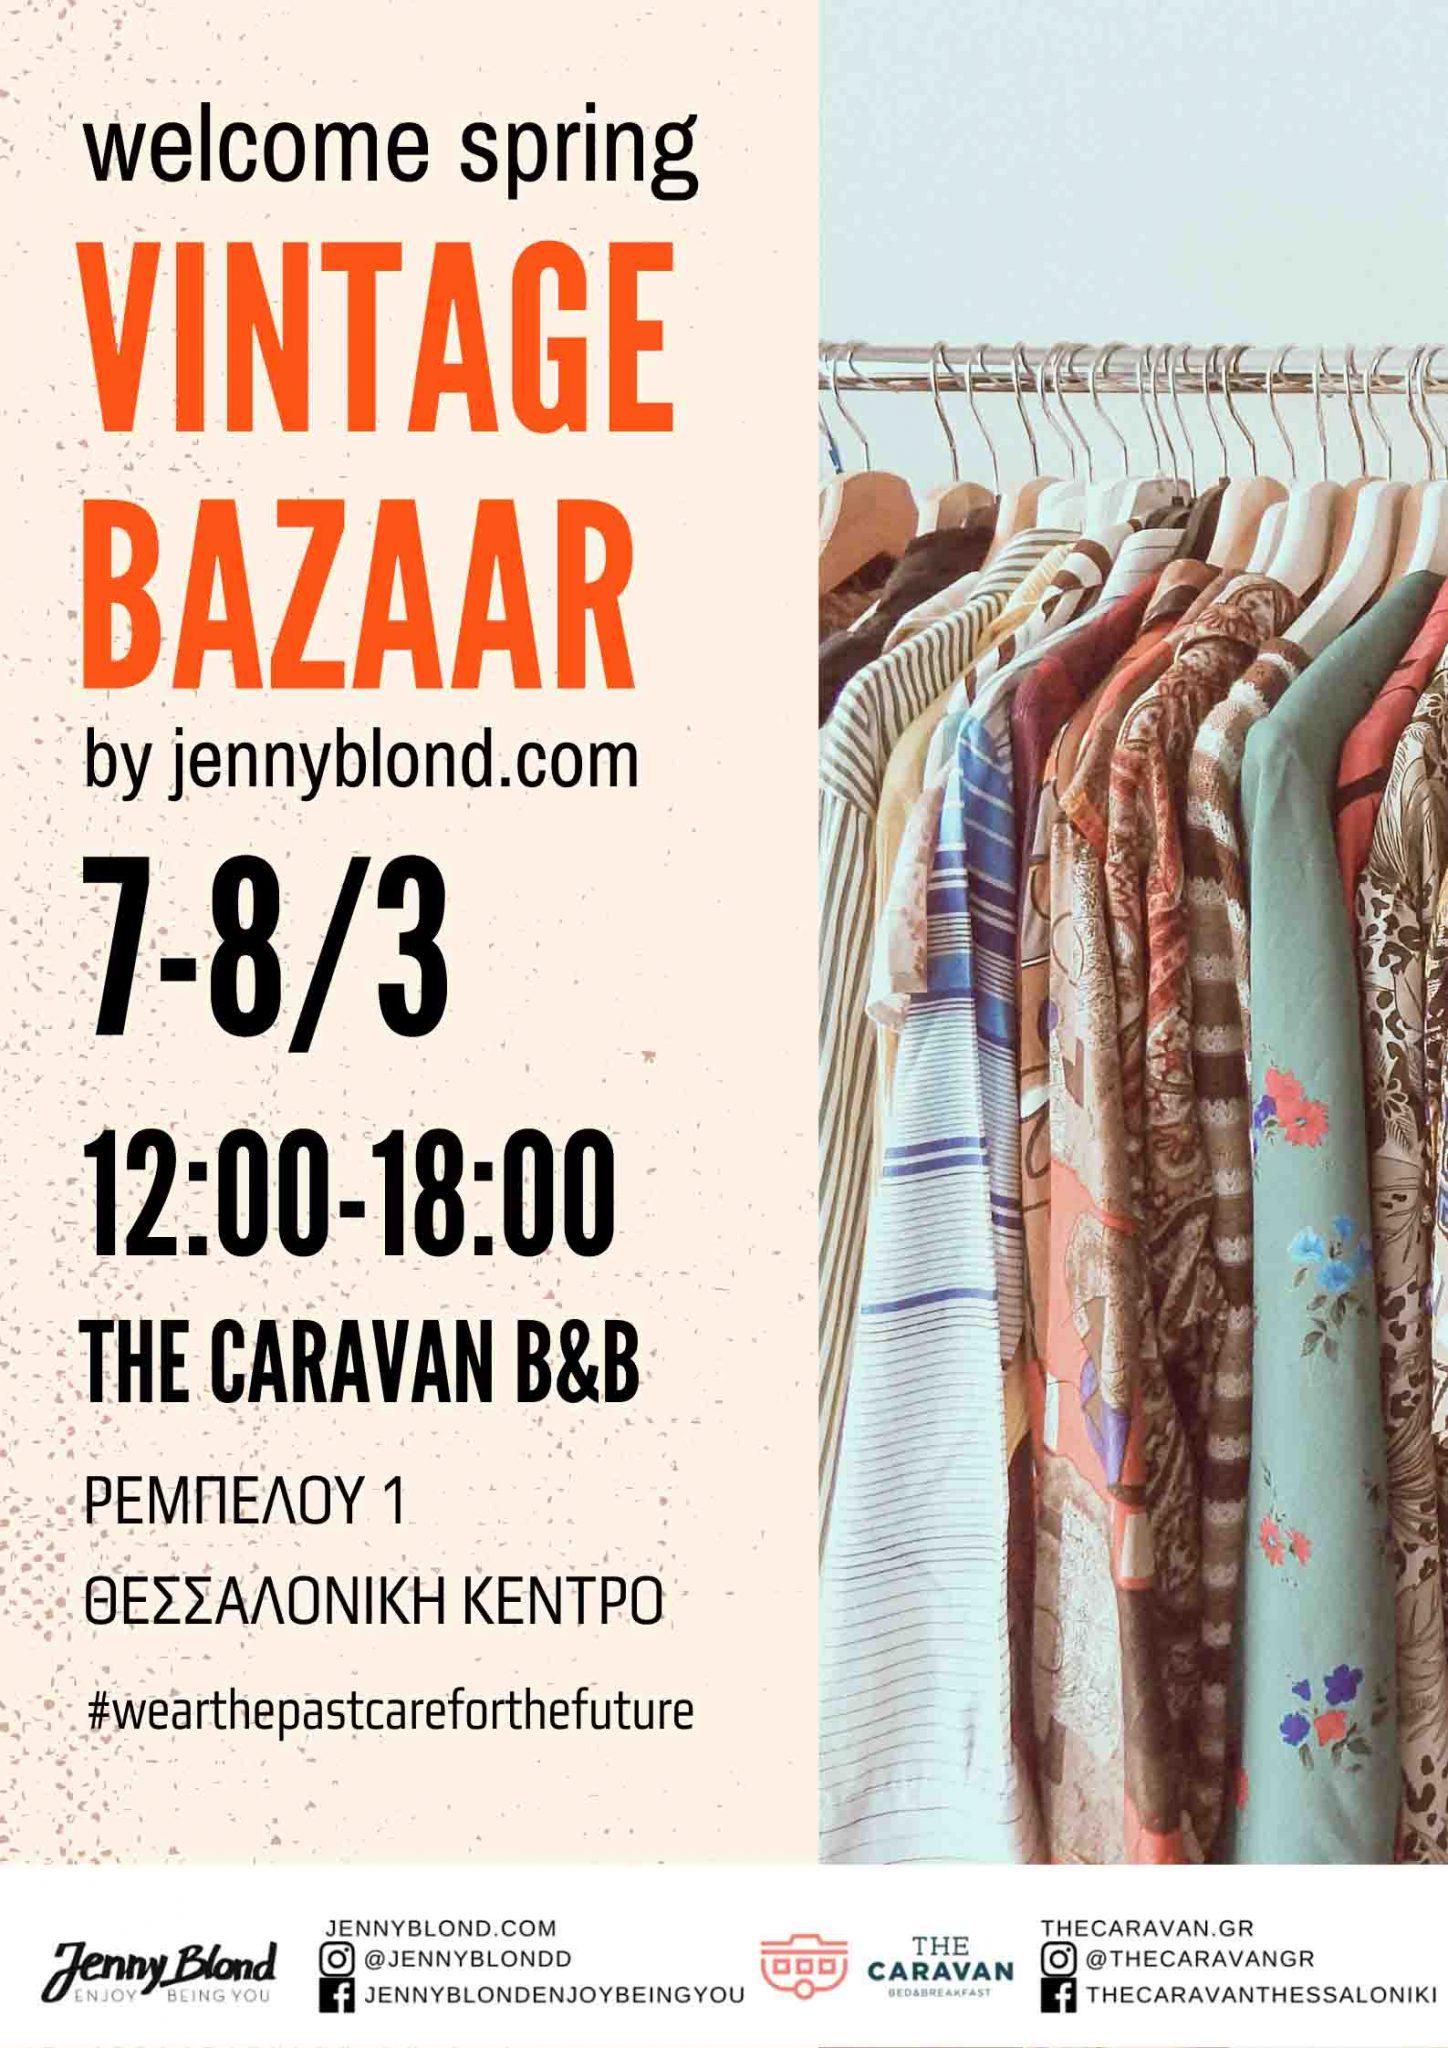 Το Jenny Blond υποδέχεται την άνοιξη με ένα vintage bazaar στο The Caravan B&B